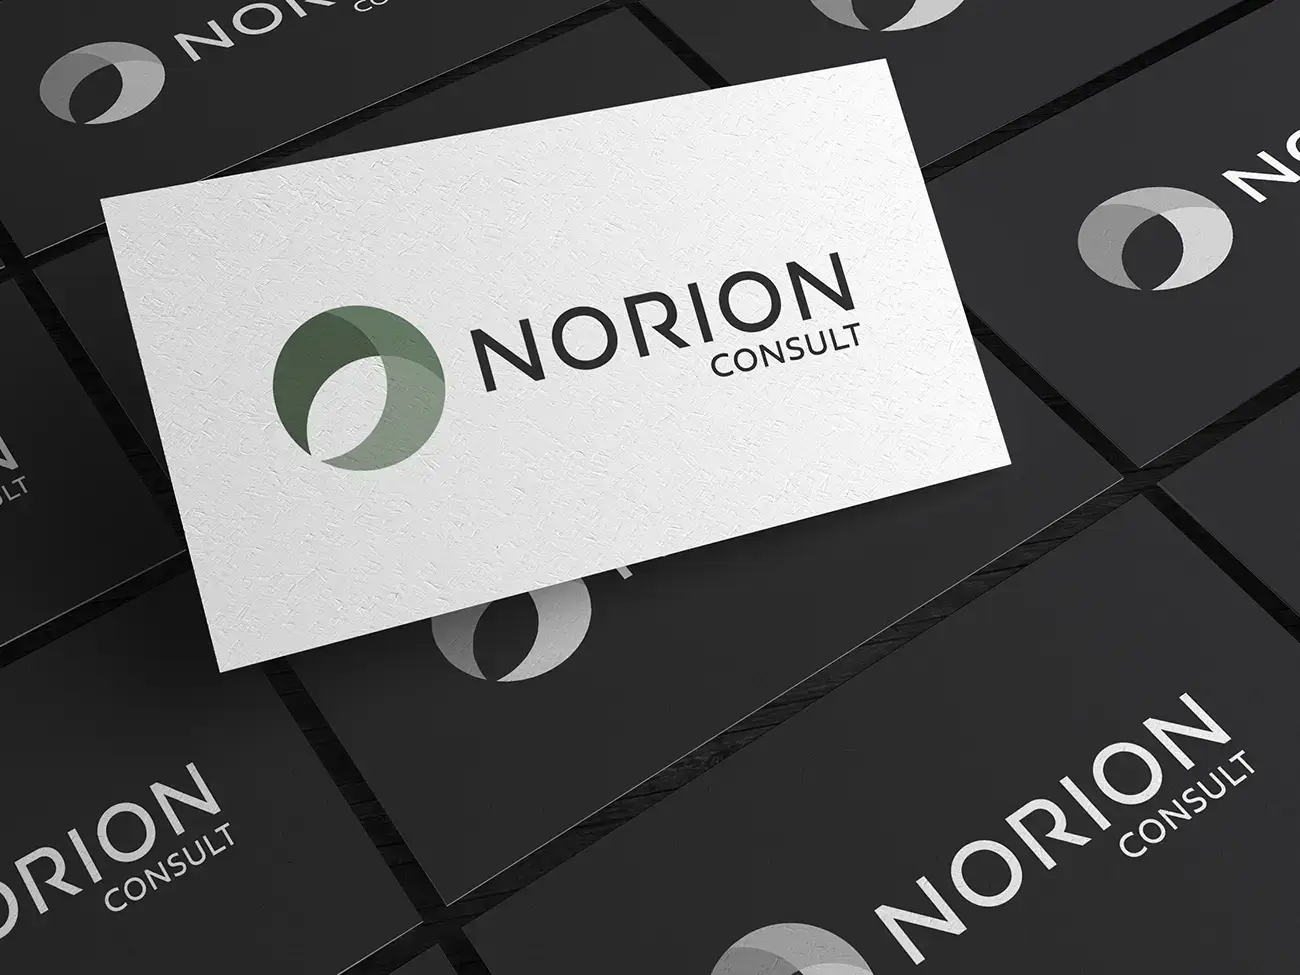 Norion Consult logo på visitkort